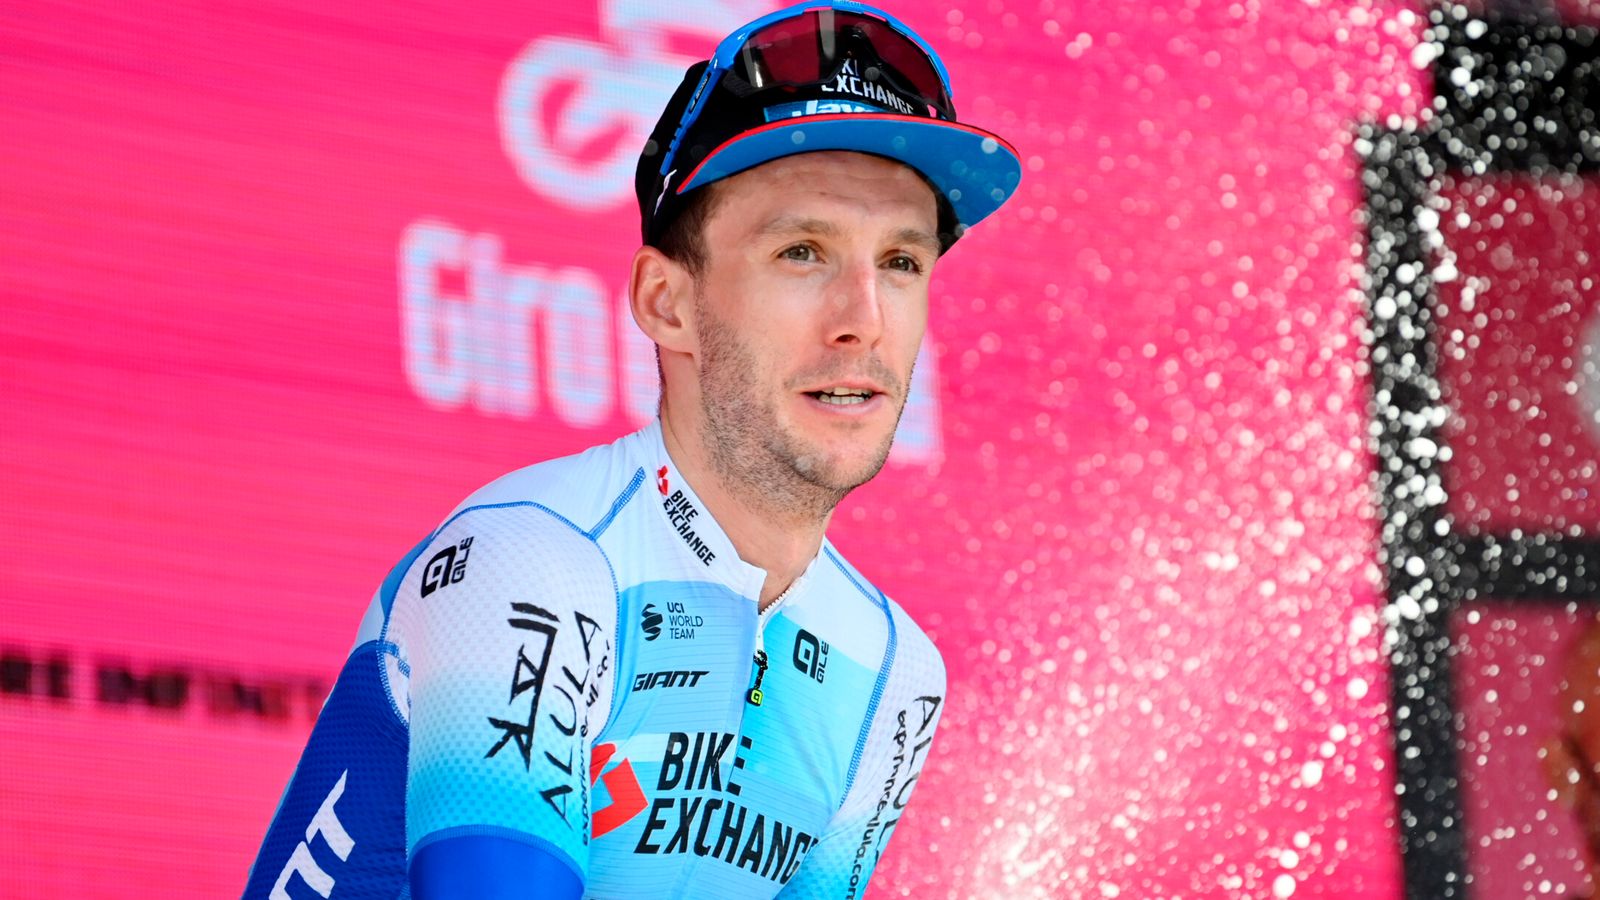 Simon Yates wins Giro d’Italia stage 14 as Richard Carapaz takes pink jersey